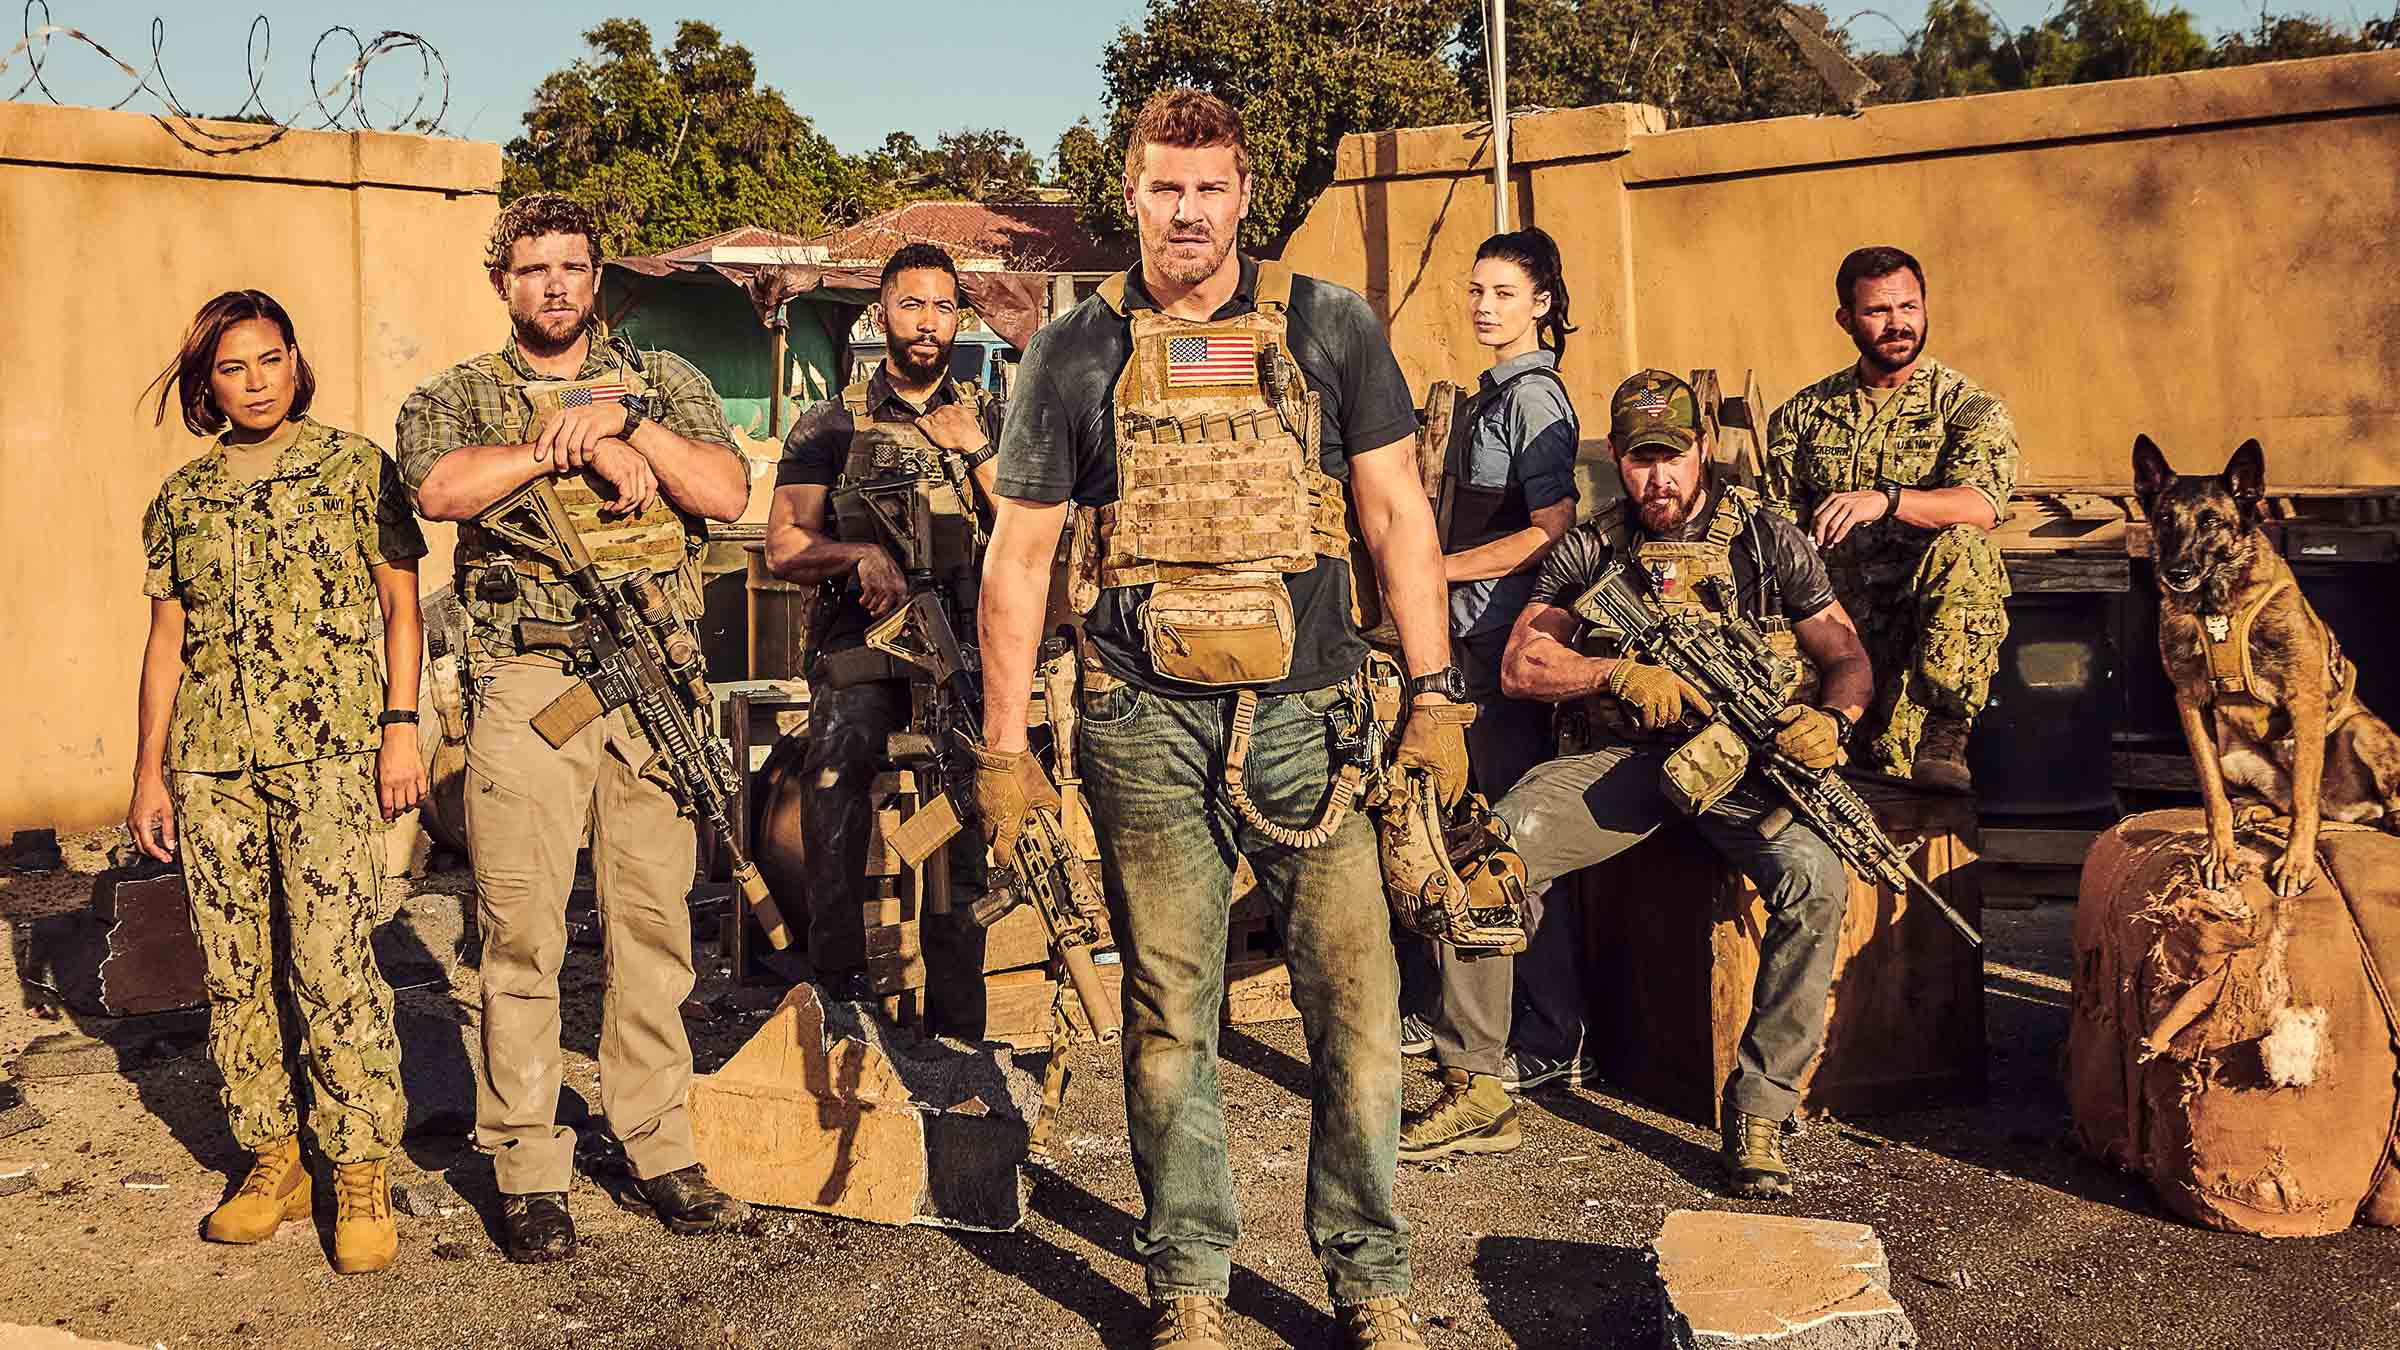 SEAL Team: Soldados de Elite Temporada 3 - episódios online streaming